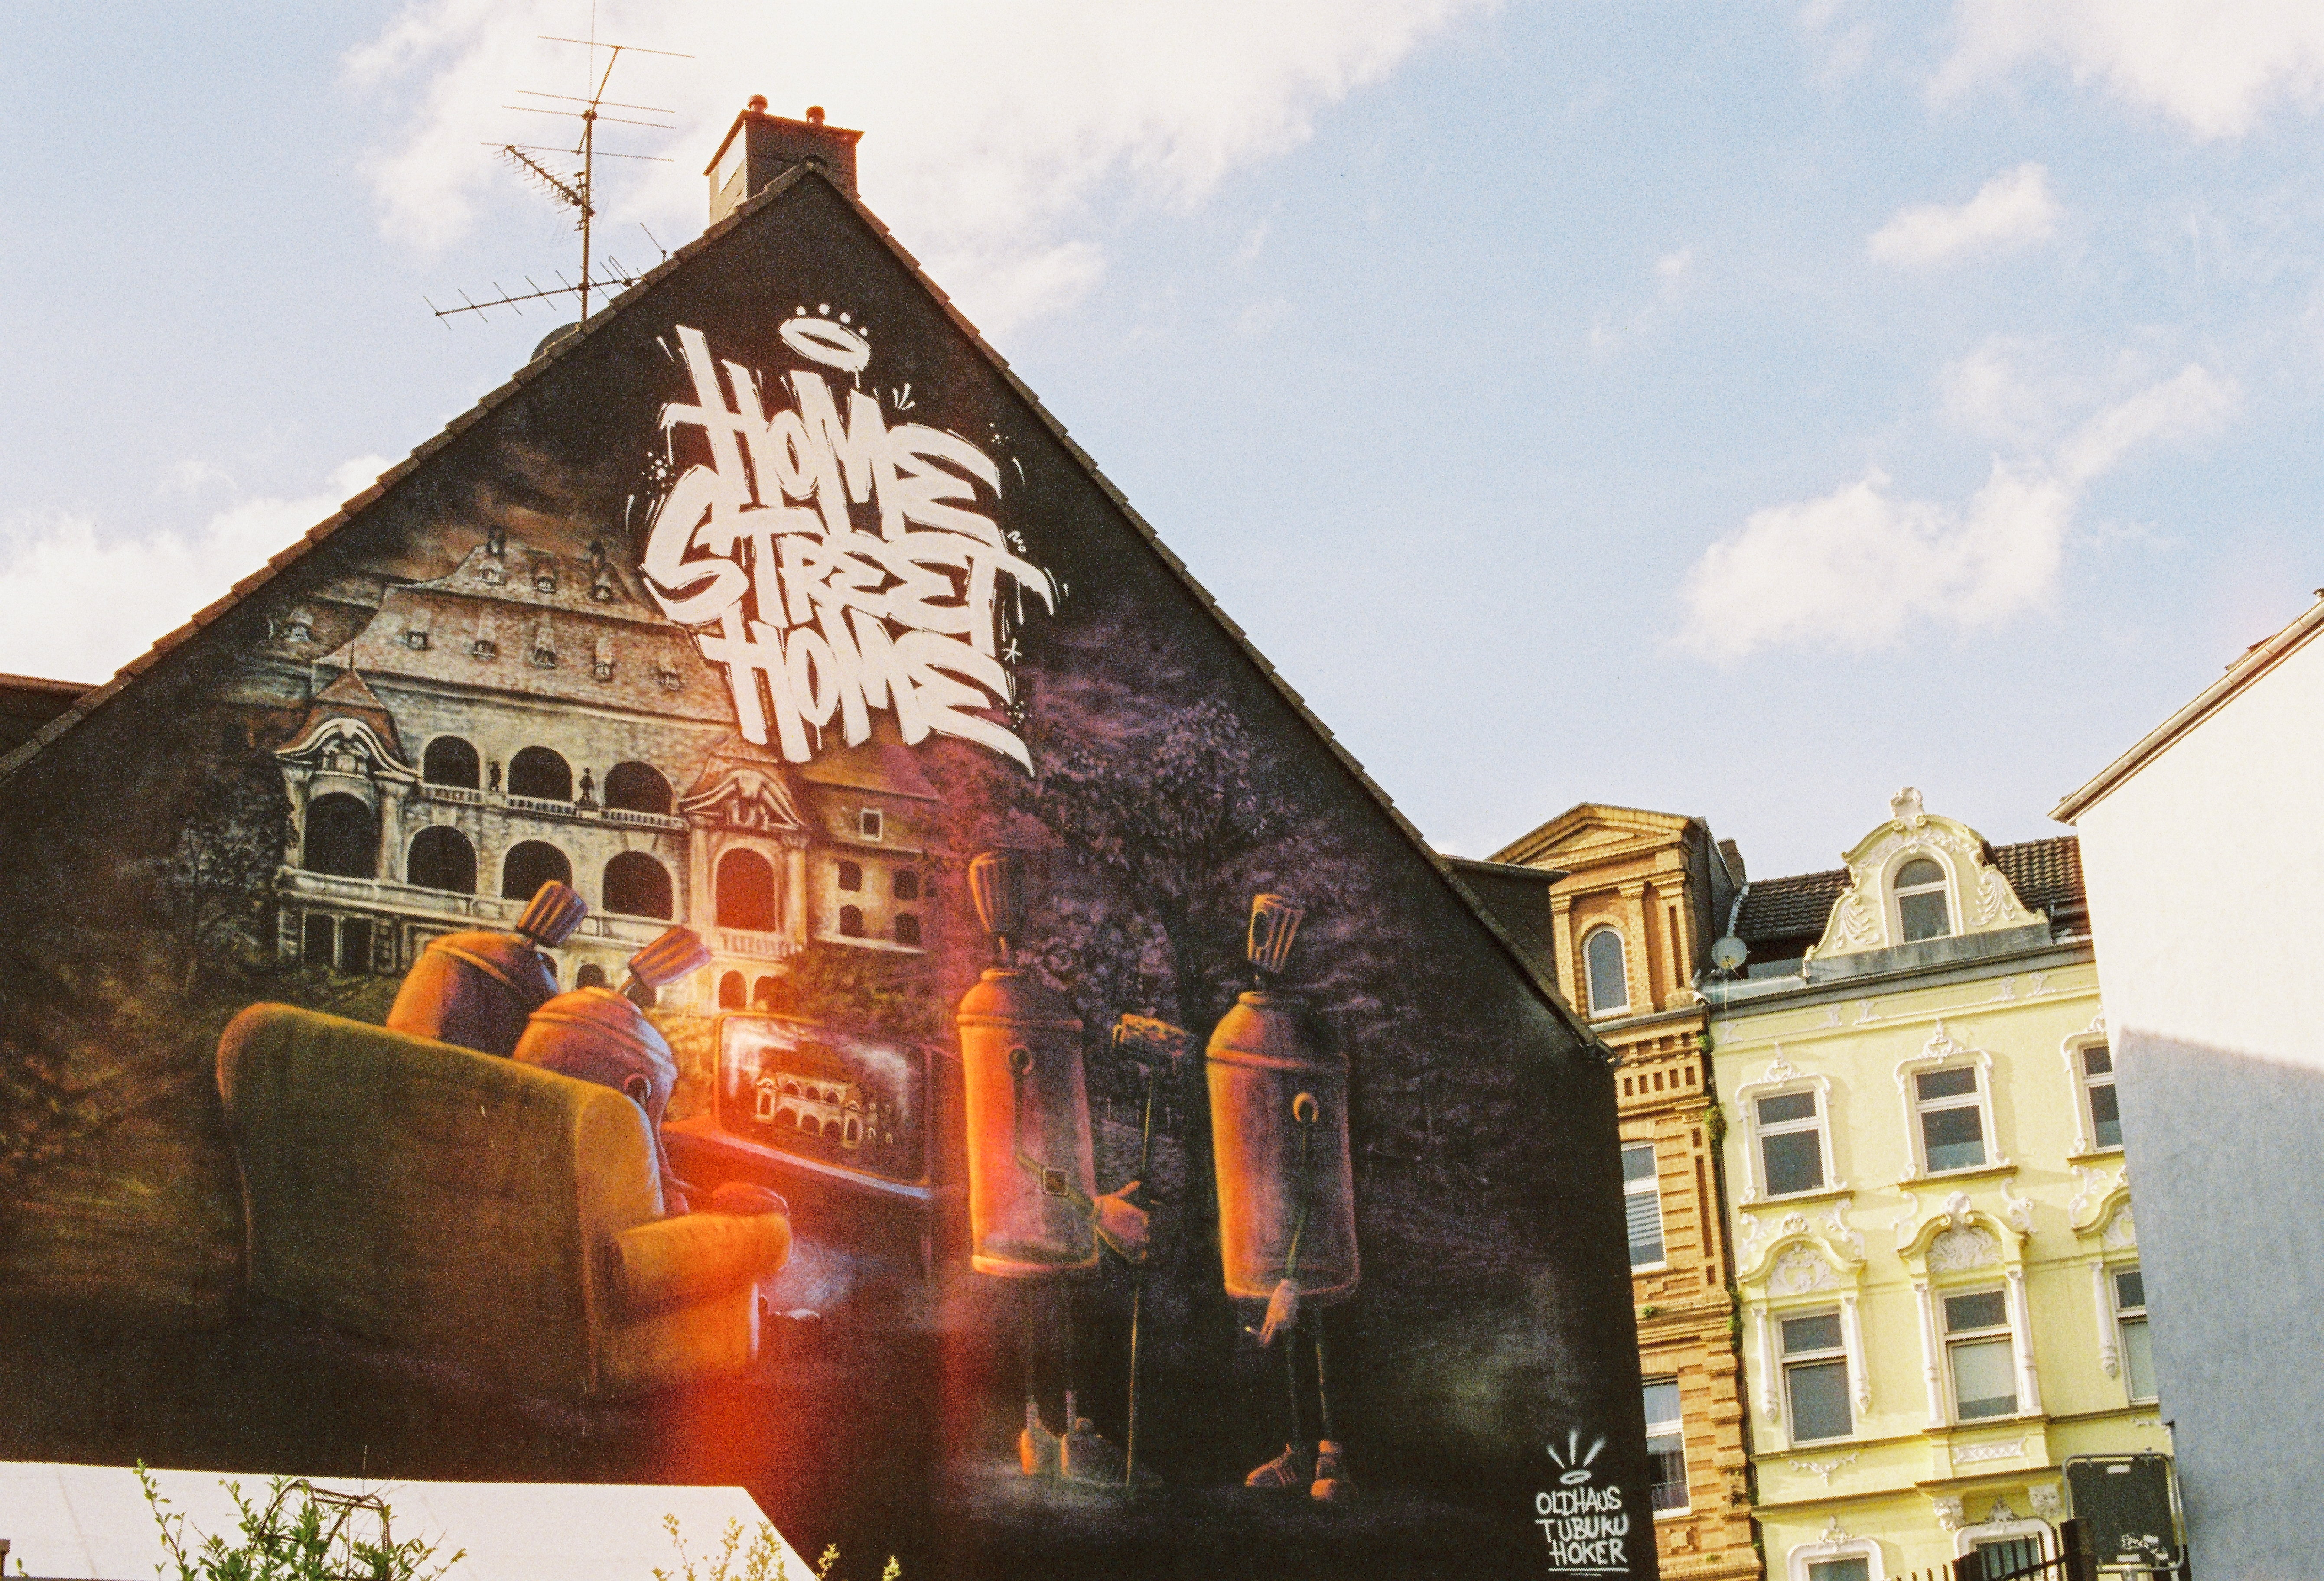 Mural "Home Street Home", ein Gemeinschaftsmotiv  von Hoker, Oldhaus & Tubuku, an einer Hausfassade in Mönchengladbach. In dem Mural werden Menschen als Spraydosen dargestellt.  © Tourismus NRW e.V./Johannes Höhn